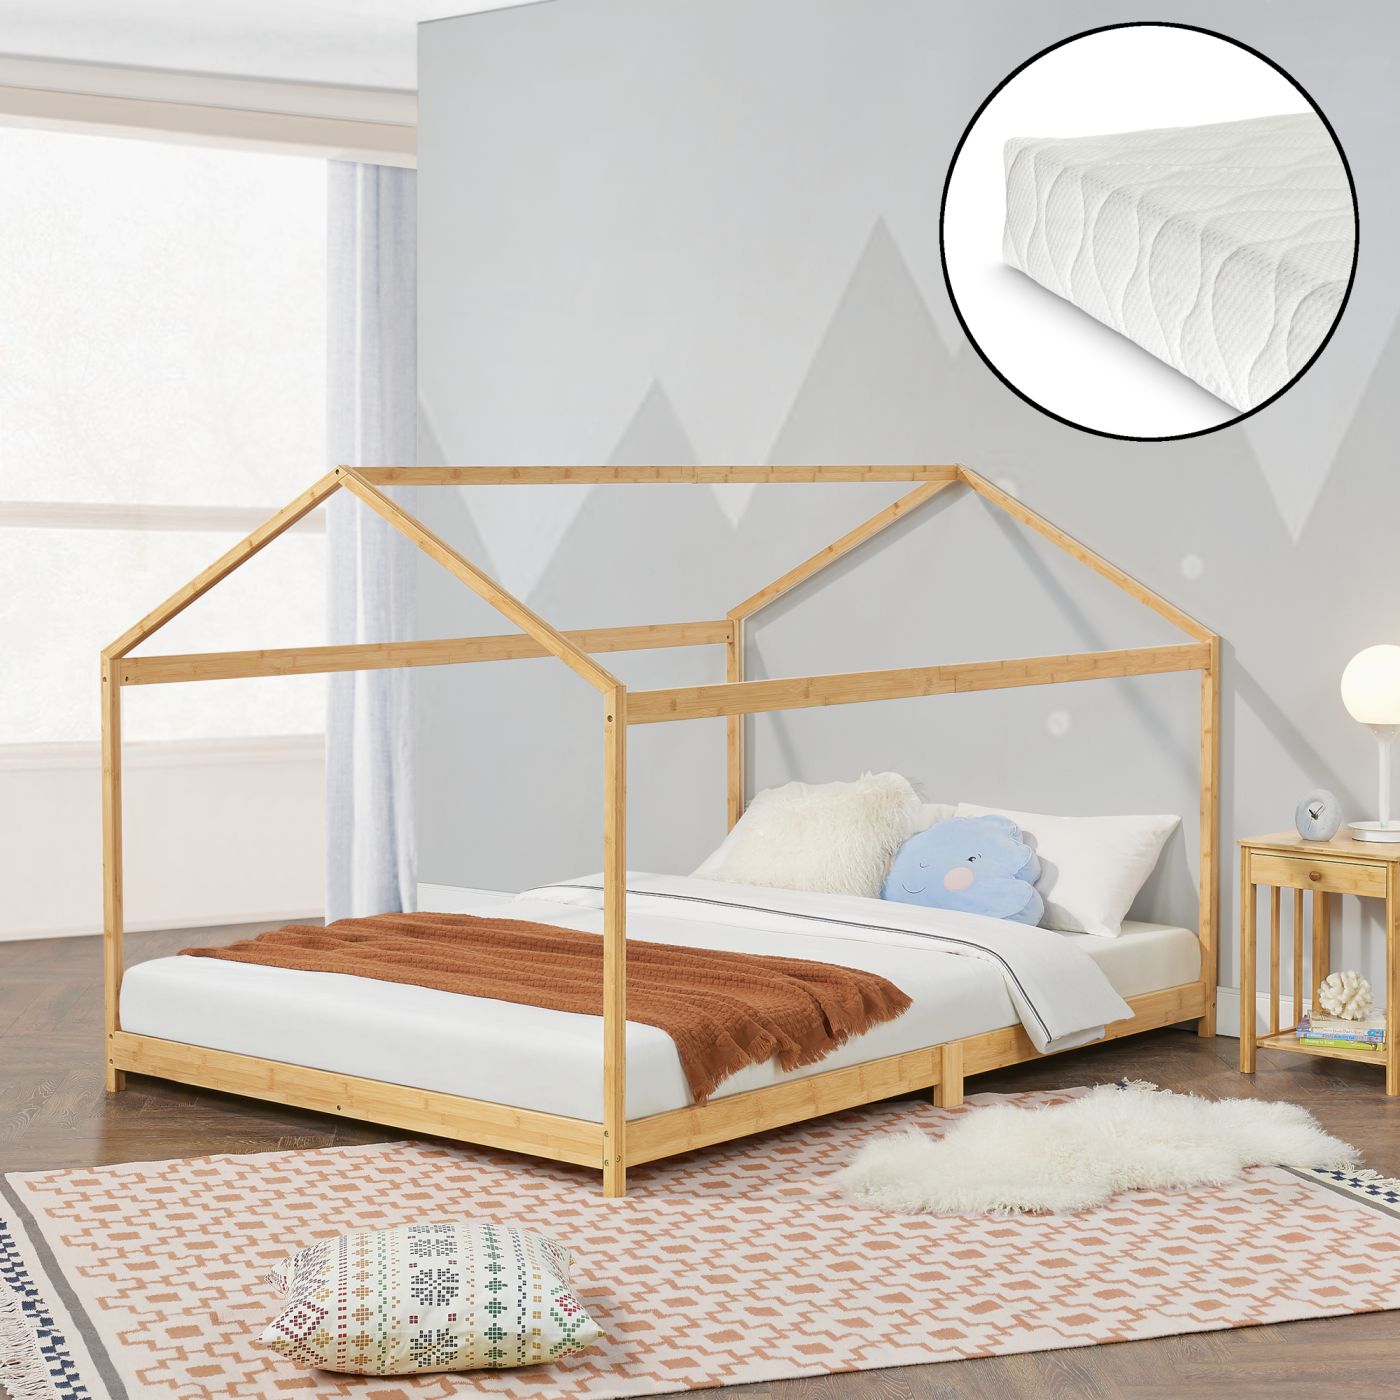 opblijven Ontwapening Wrok neu.haus] Kinderbed Vindafjord huisbed met matras bamboe - 2 varianten |  premiumXL